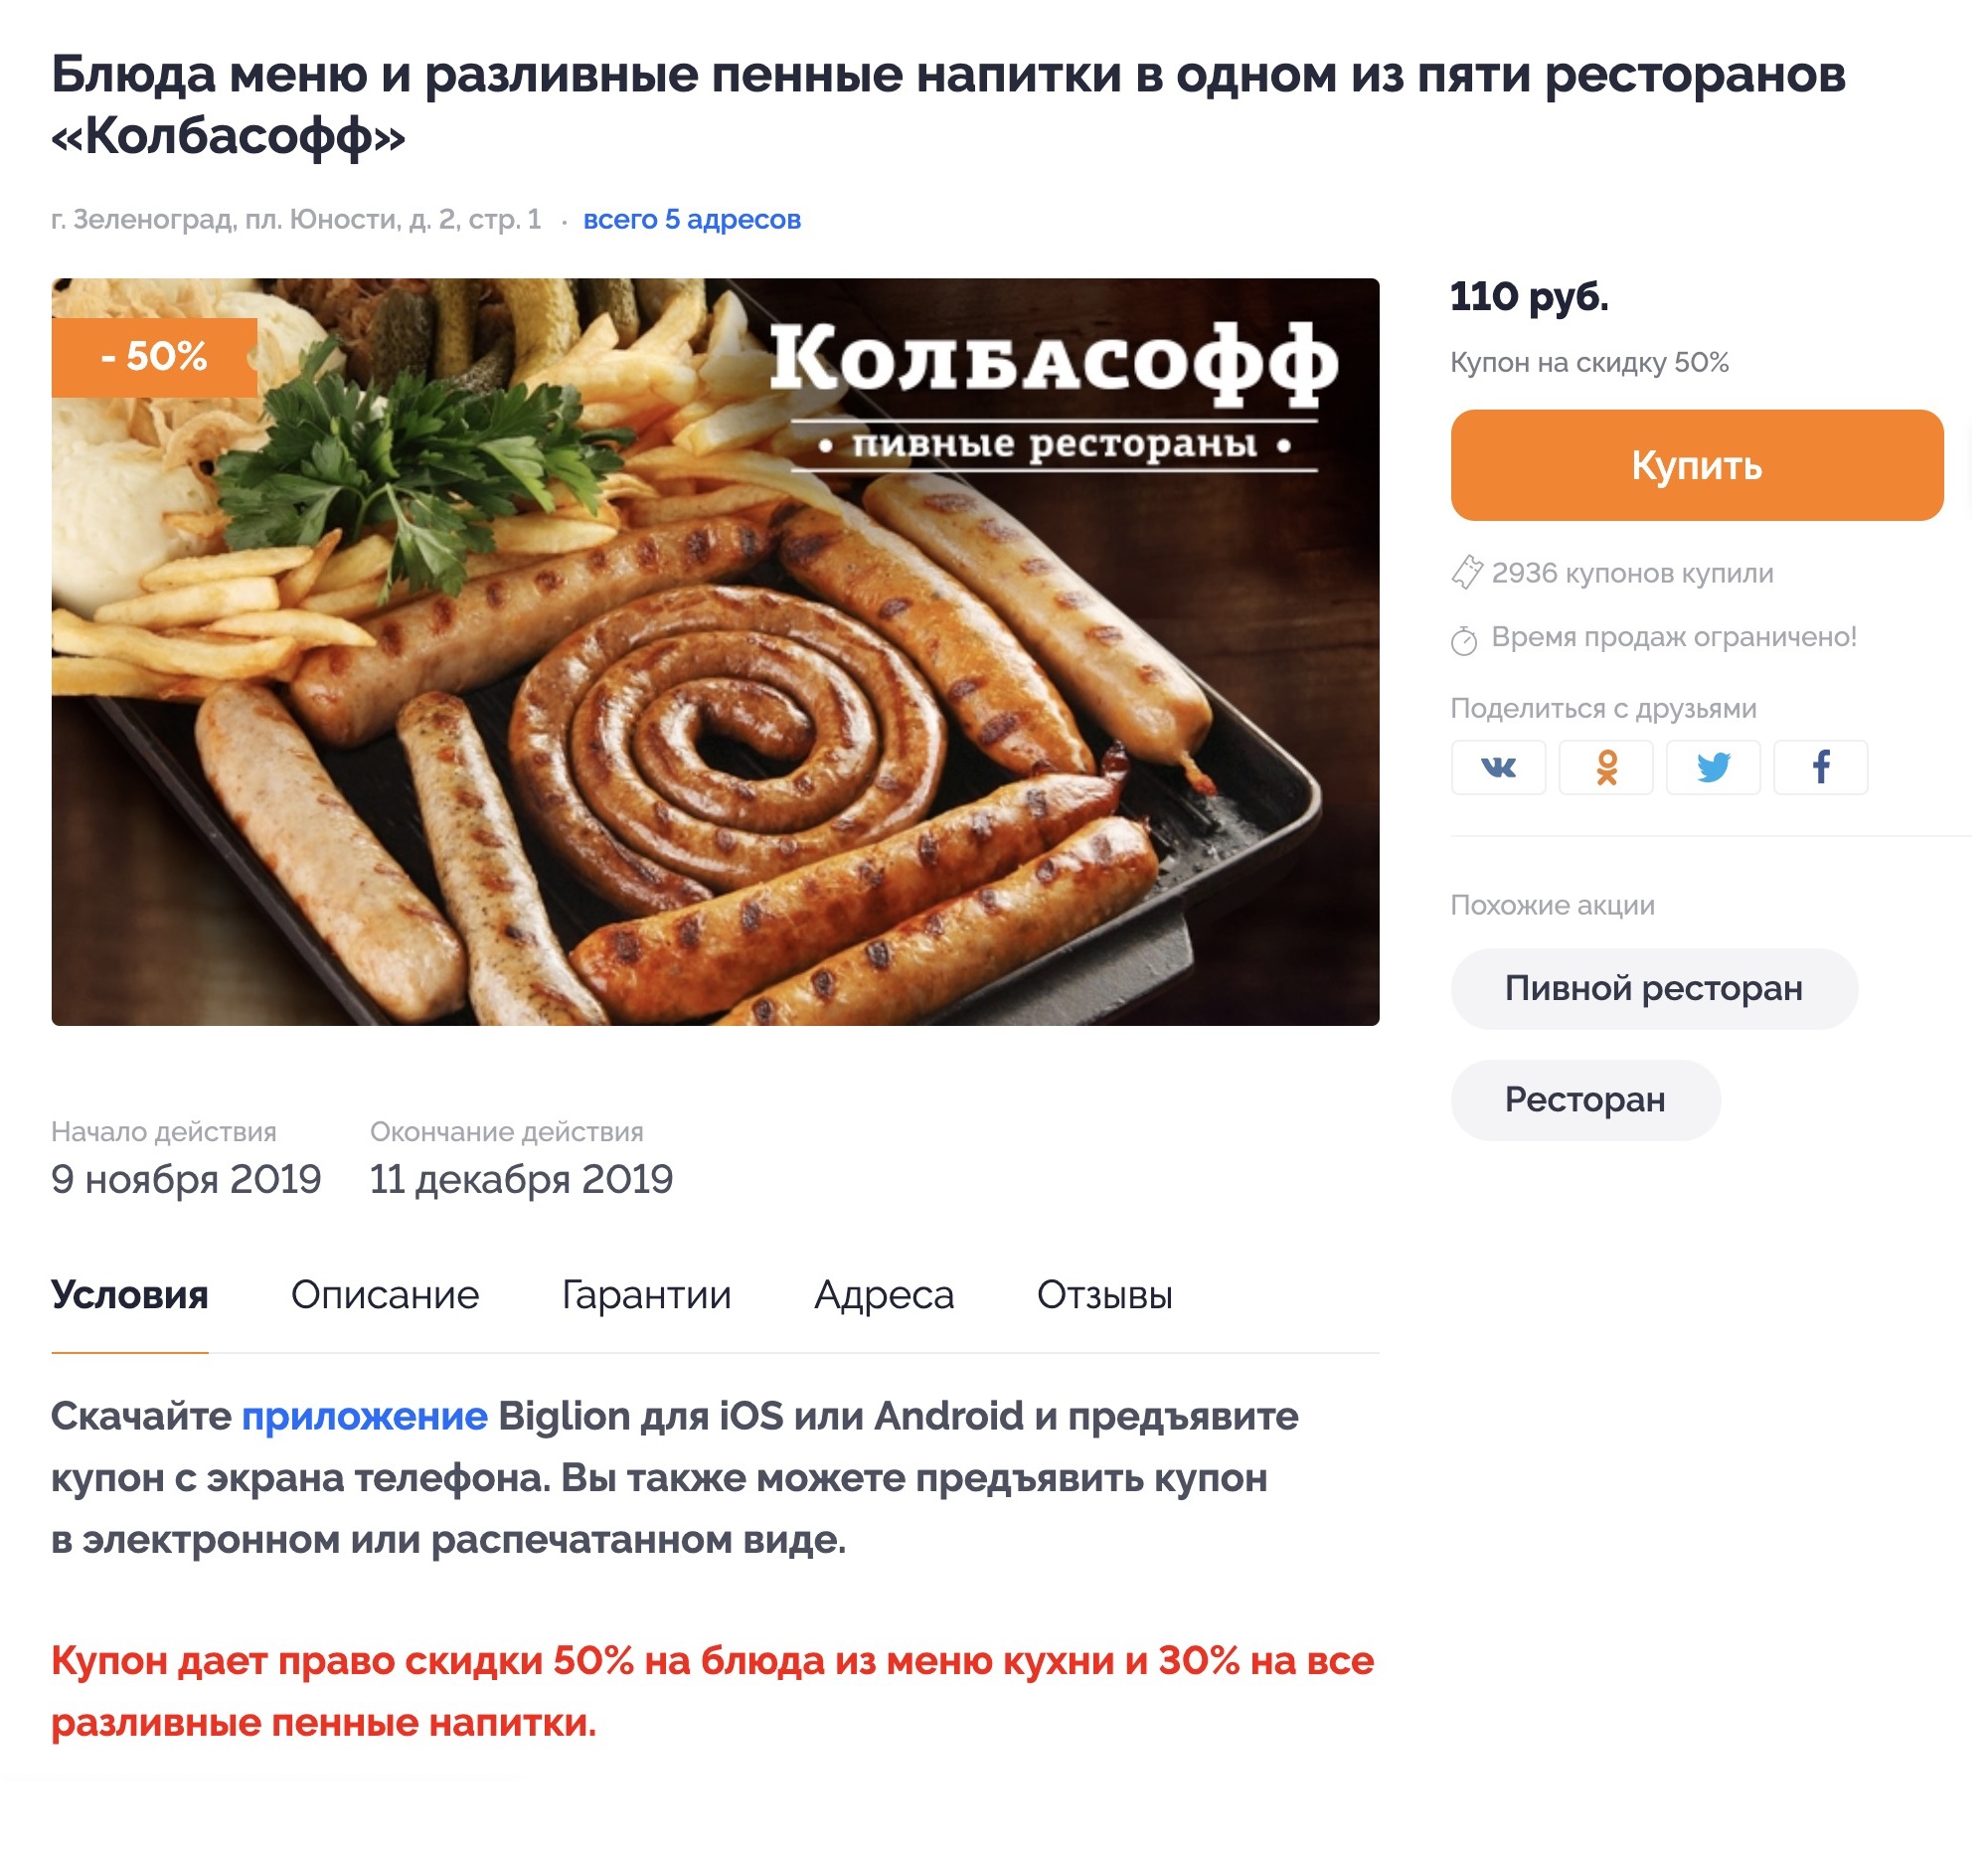 Купон за 110 рублей в «Колбасофф» дает скидку 50% на блюда из меню кухни и 30% на все разливные пенные напитки